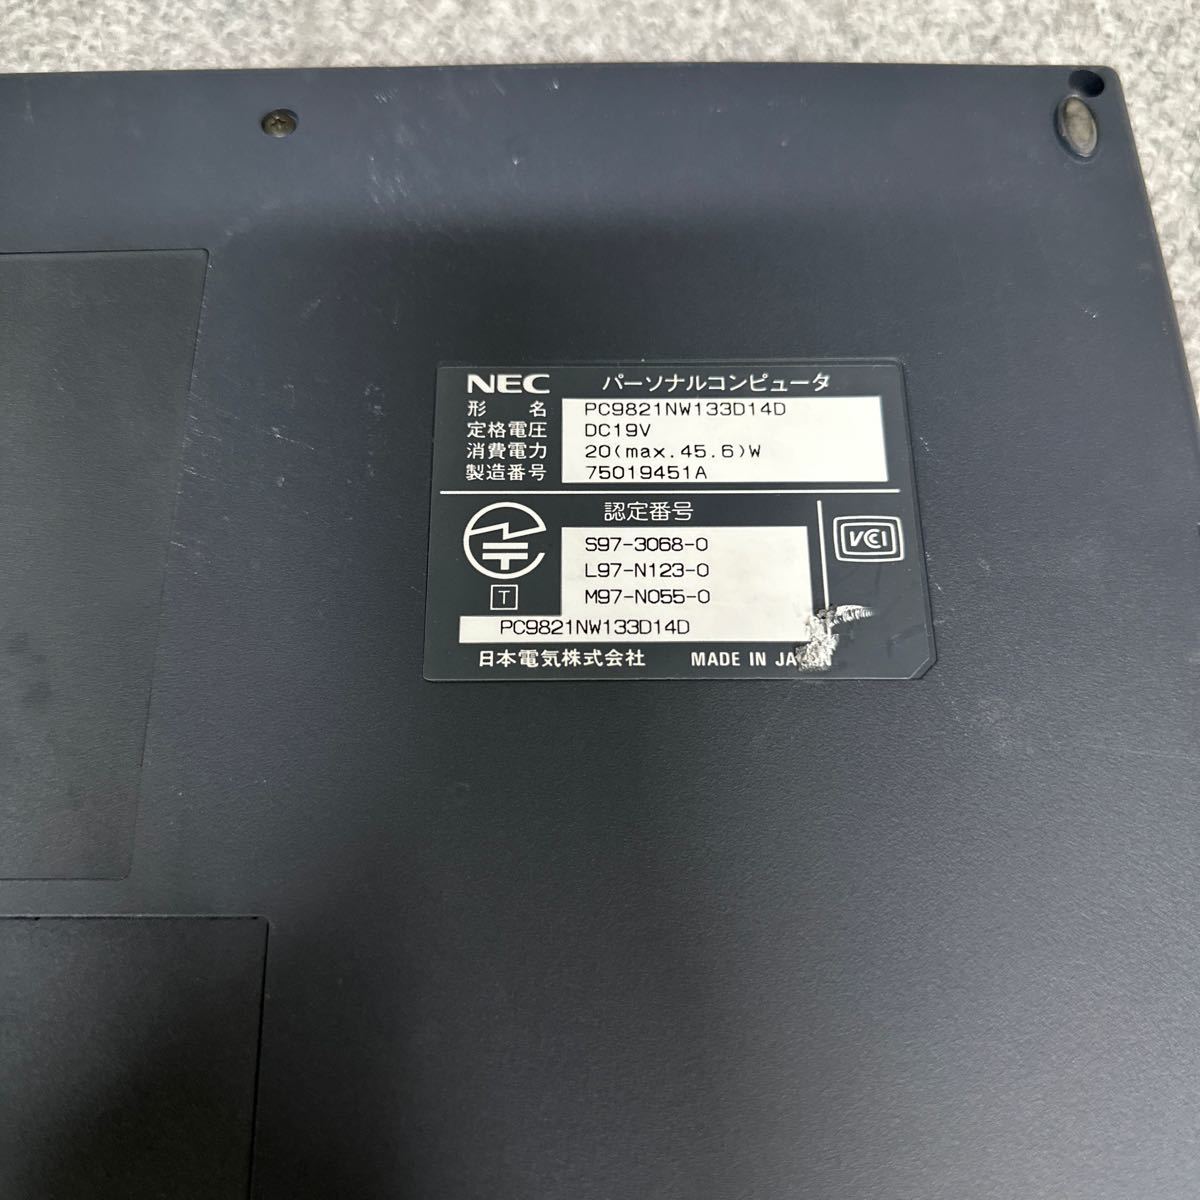 PCN98-1228 супер-скидка PC98 ноутбук NEC PC-9821NW133D14D пуск подтверждено Junk включение в покупку возможность 